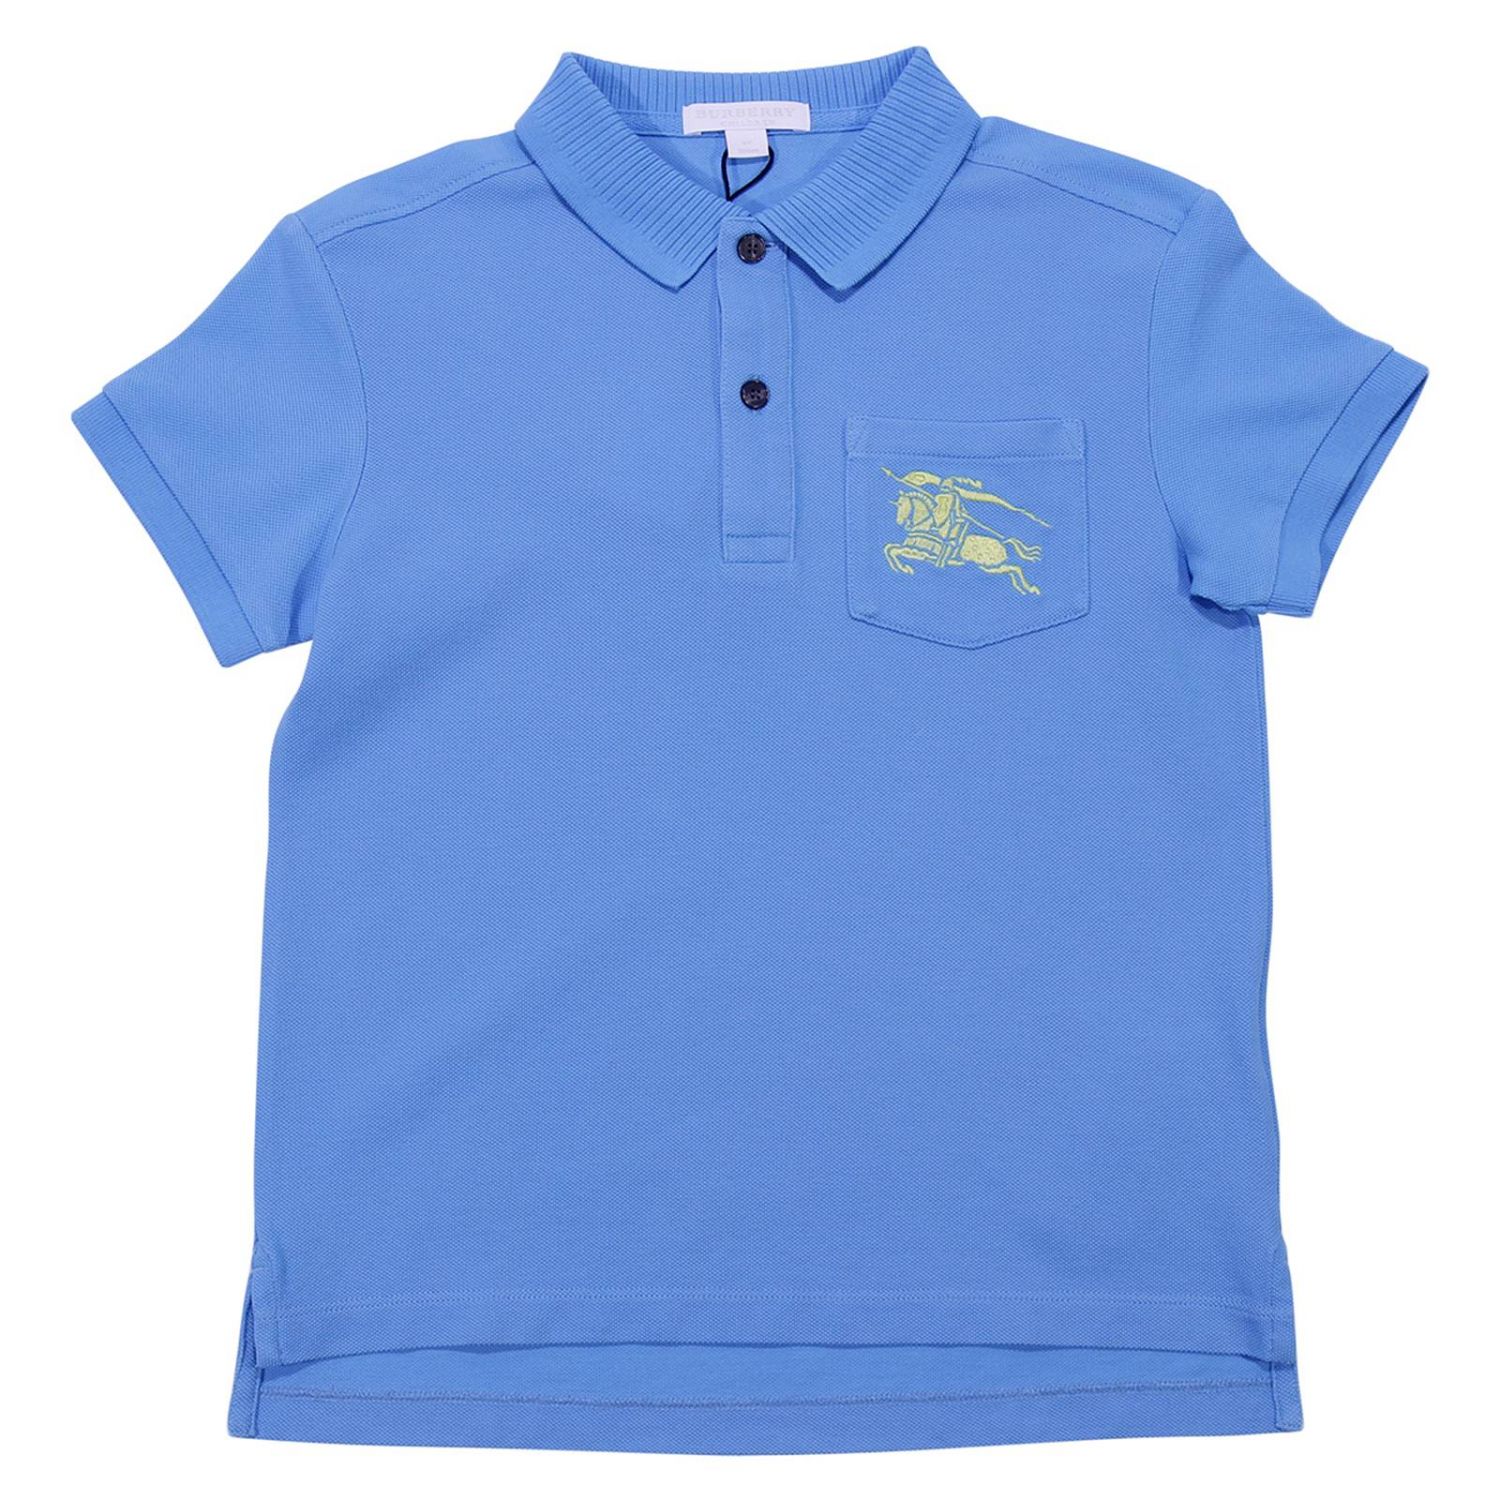 Burberry Outlet: T-shirt kids - Sky Blue | T-Shirt Burberry 8007720 ...